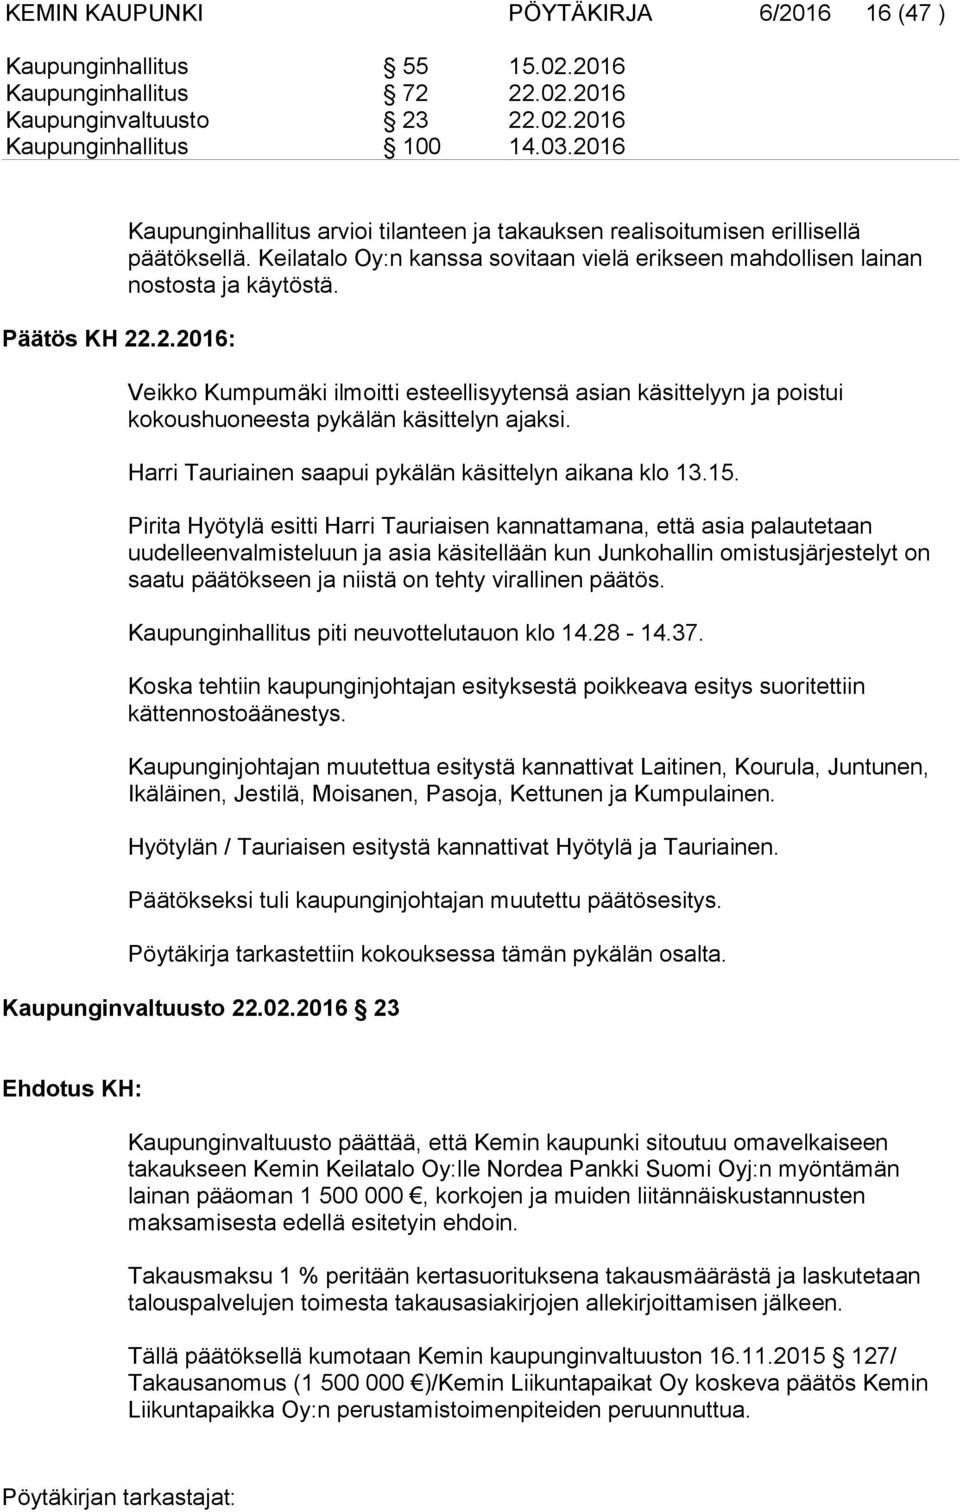 Veikko Kumpumäki ilmoitti esteellisyytensä asian käsittelyyn ja poistui kokoushuoneesta pykälän käsittelyn ajaksi. Harri Tauriainen saapui pykälän käsittelyn aikana klo 13.15.